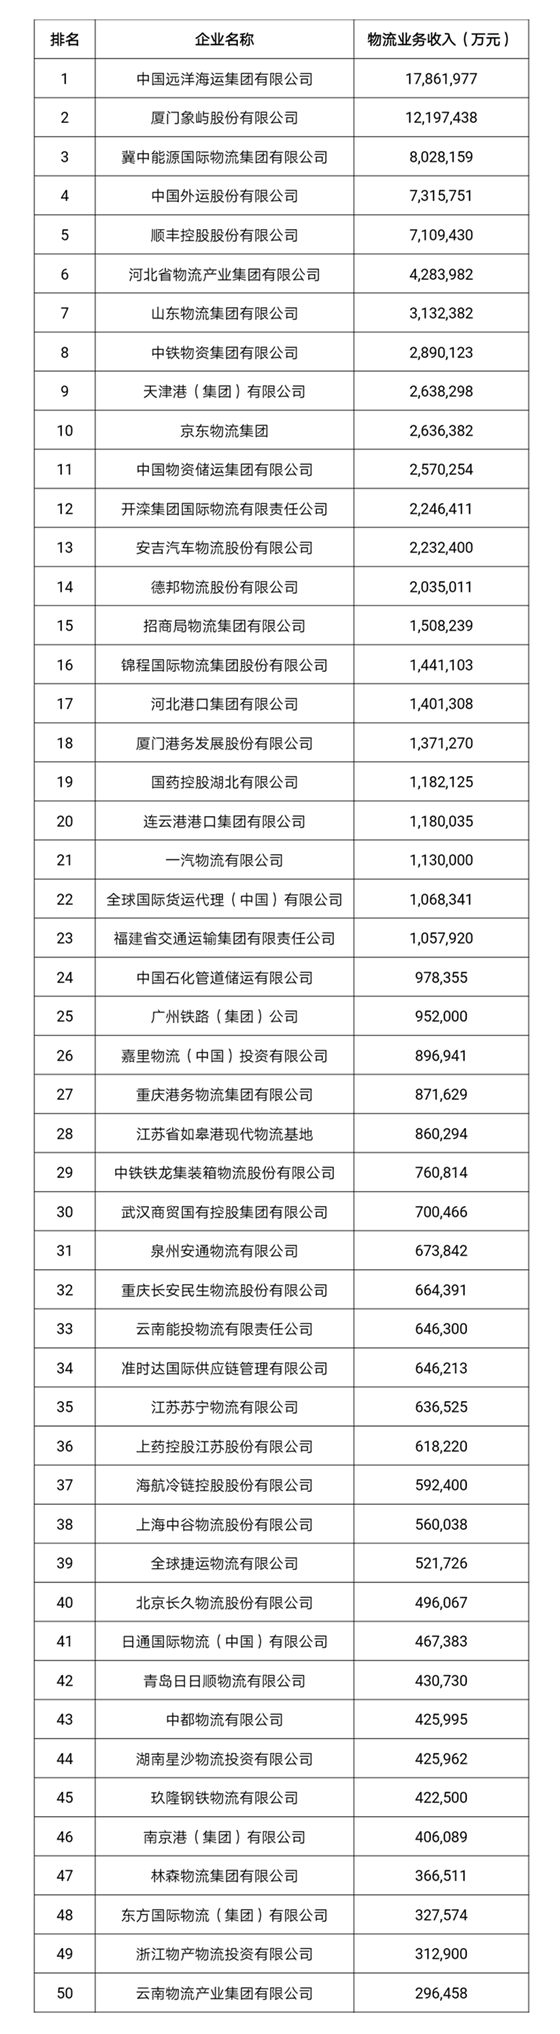 
深圳空运-2018年度中国物流企业50强排名出炉 物流业收入增速回升